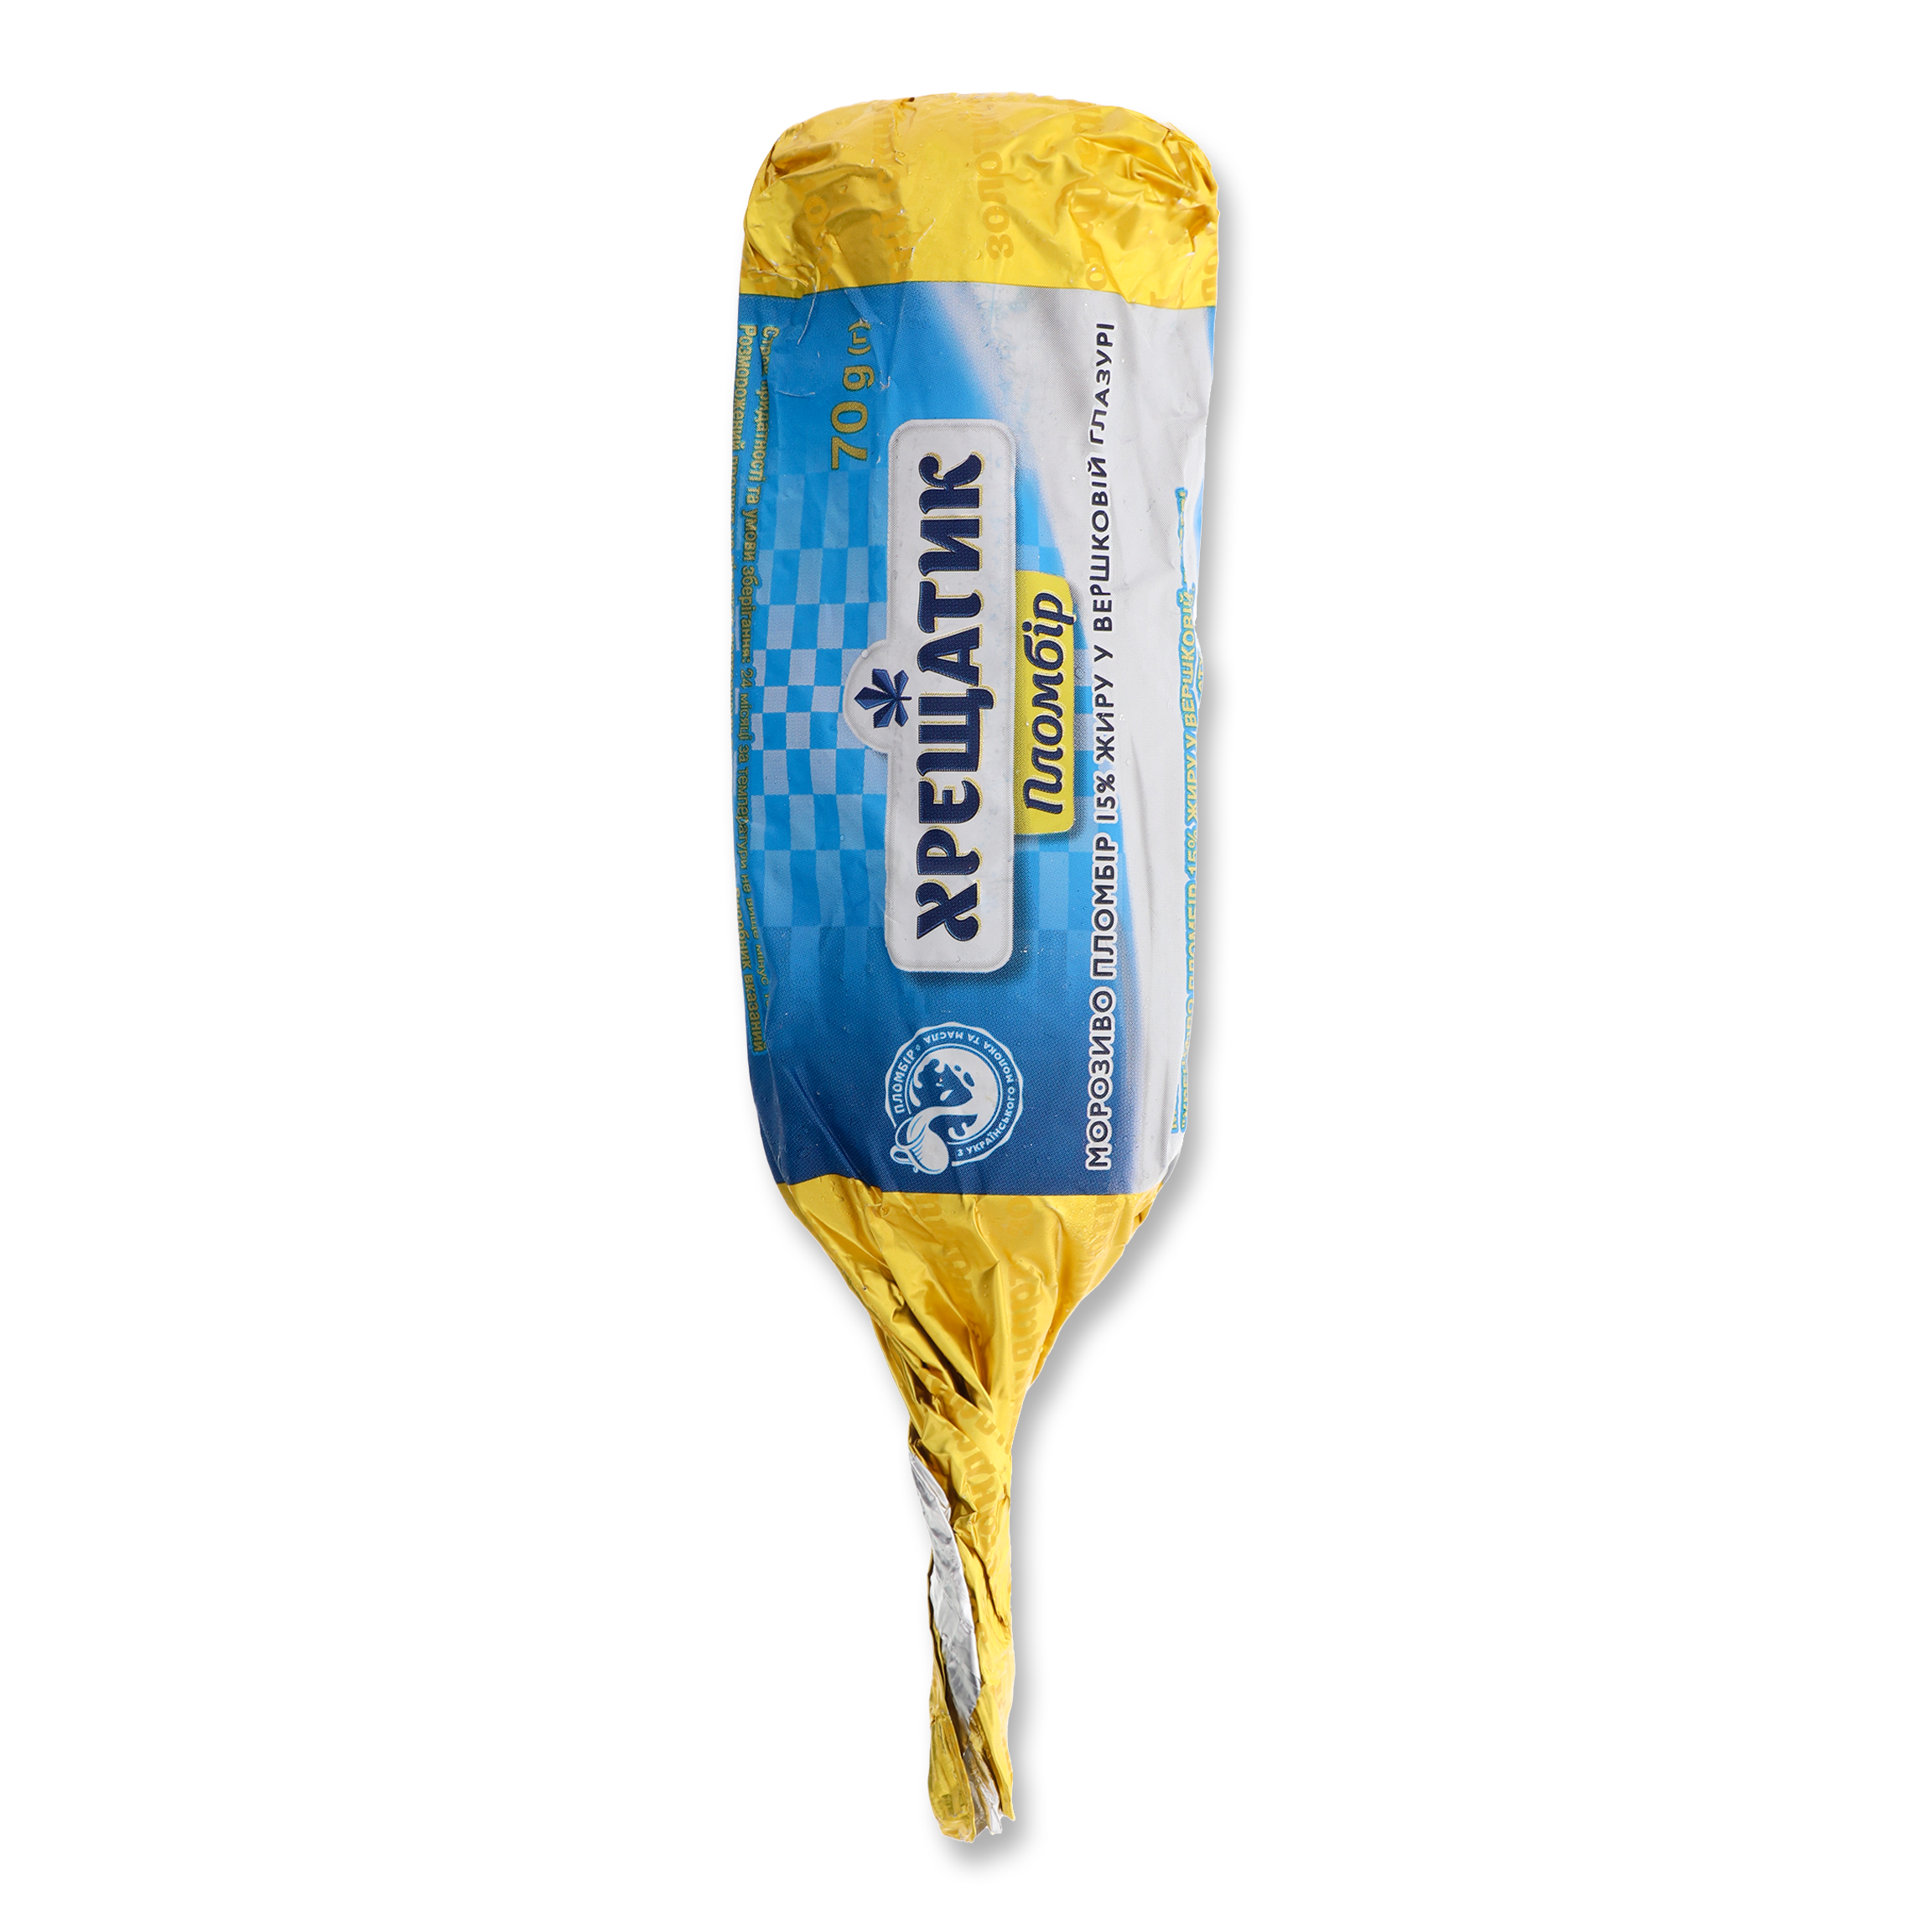 Khreshchatyk Gold Standart In Cream Glaze Plombieres Ice-Cream 15% 70g 2